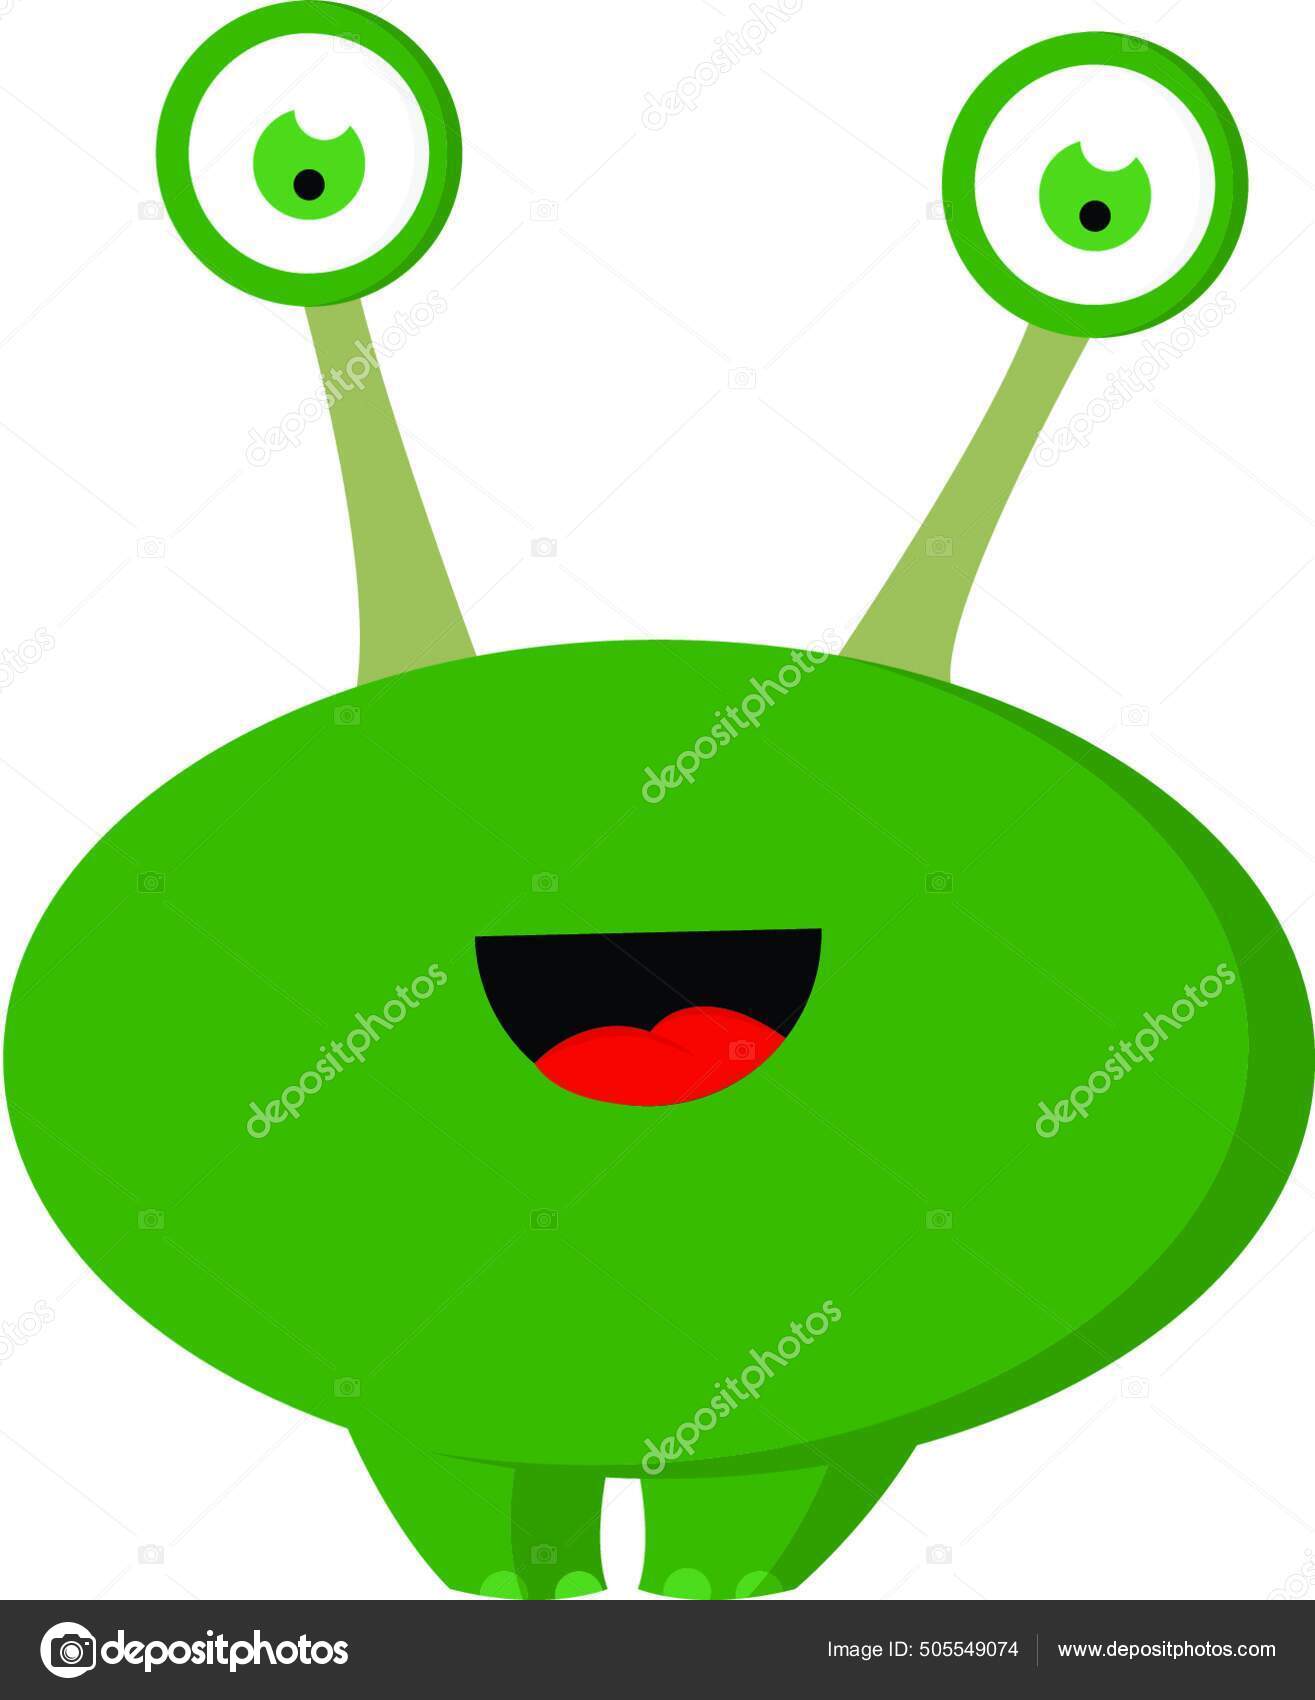 Um desenho de um alienígena verde com olhos roxos.